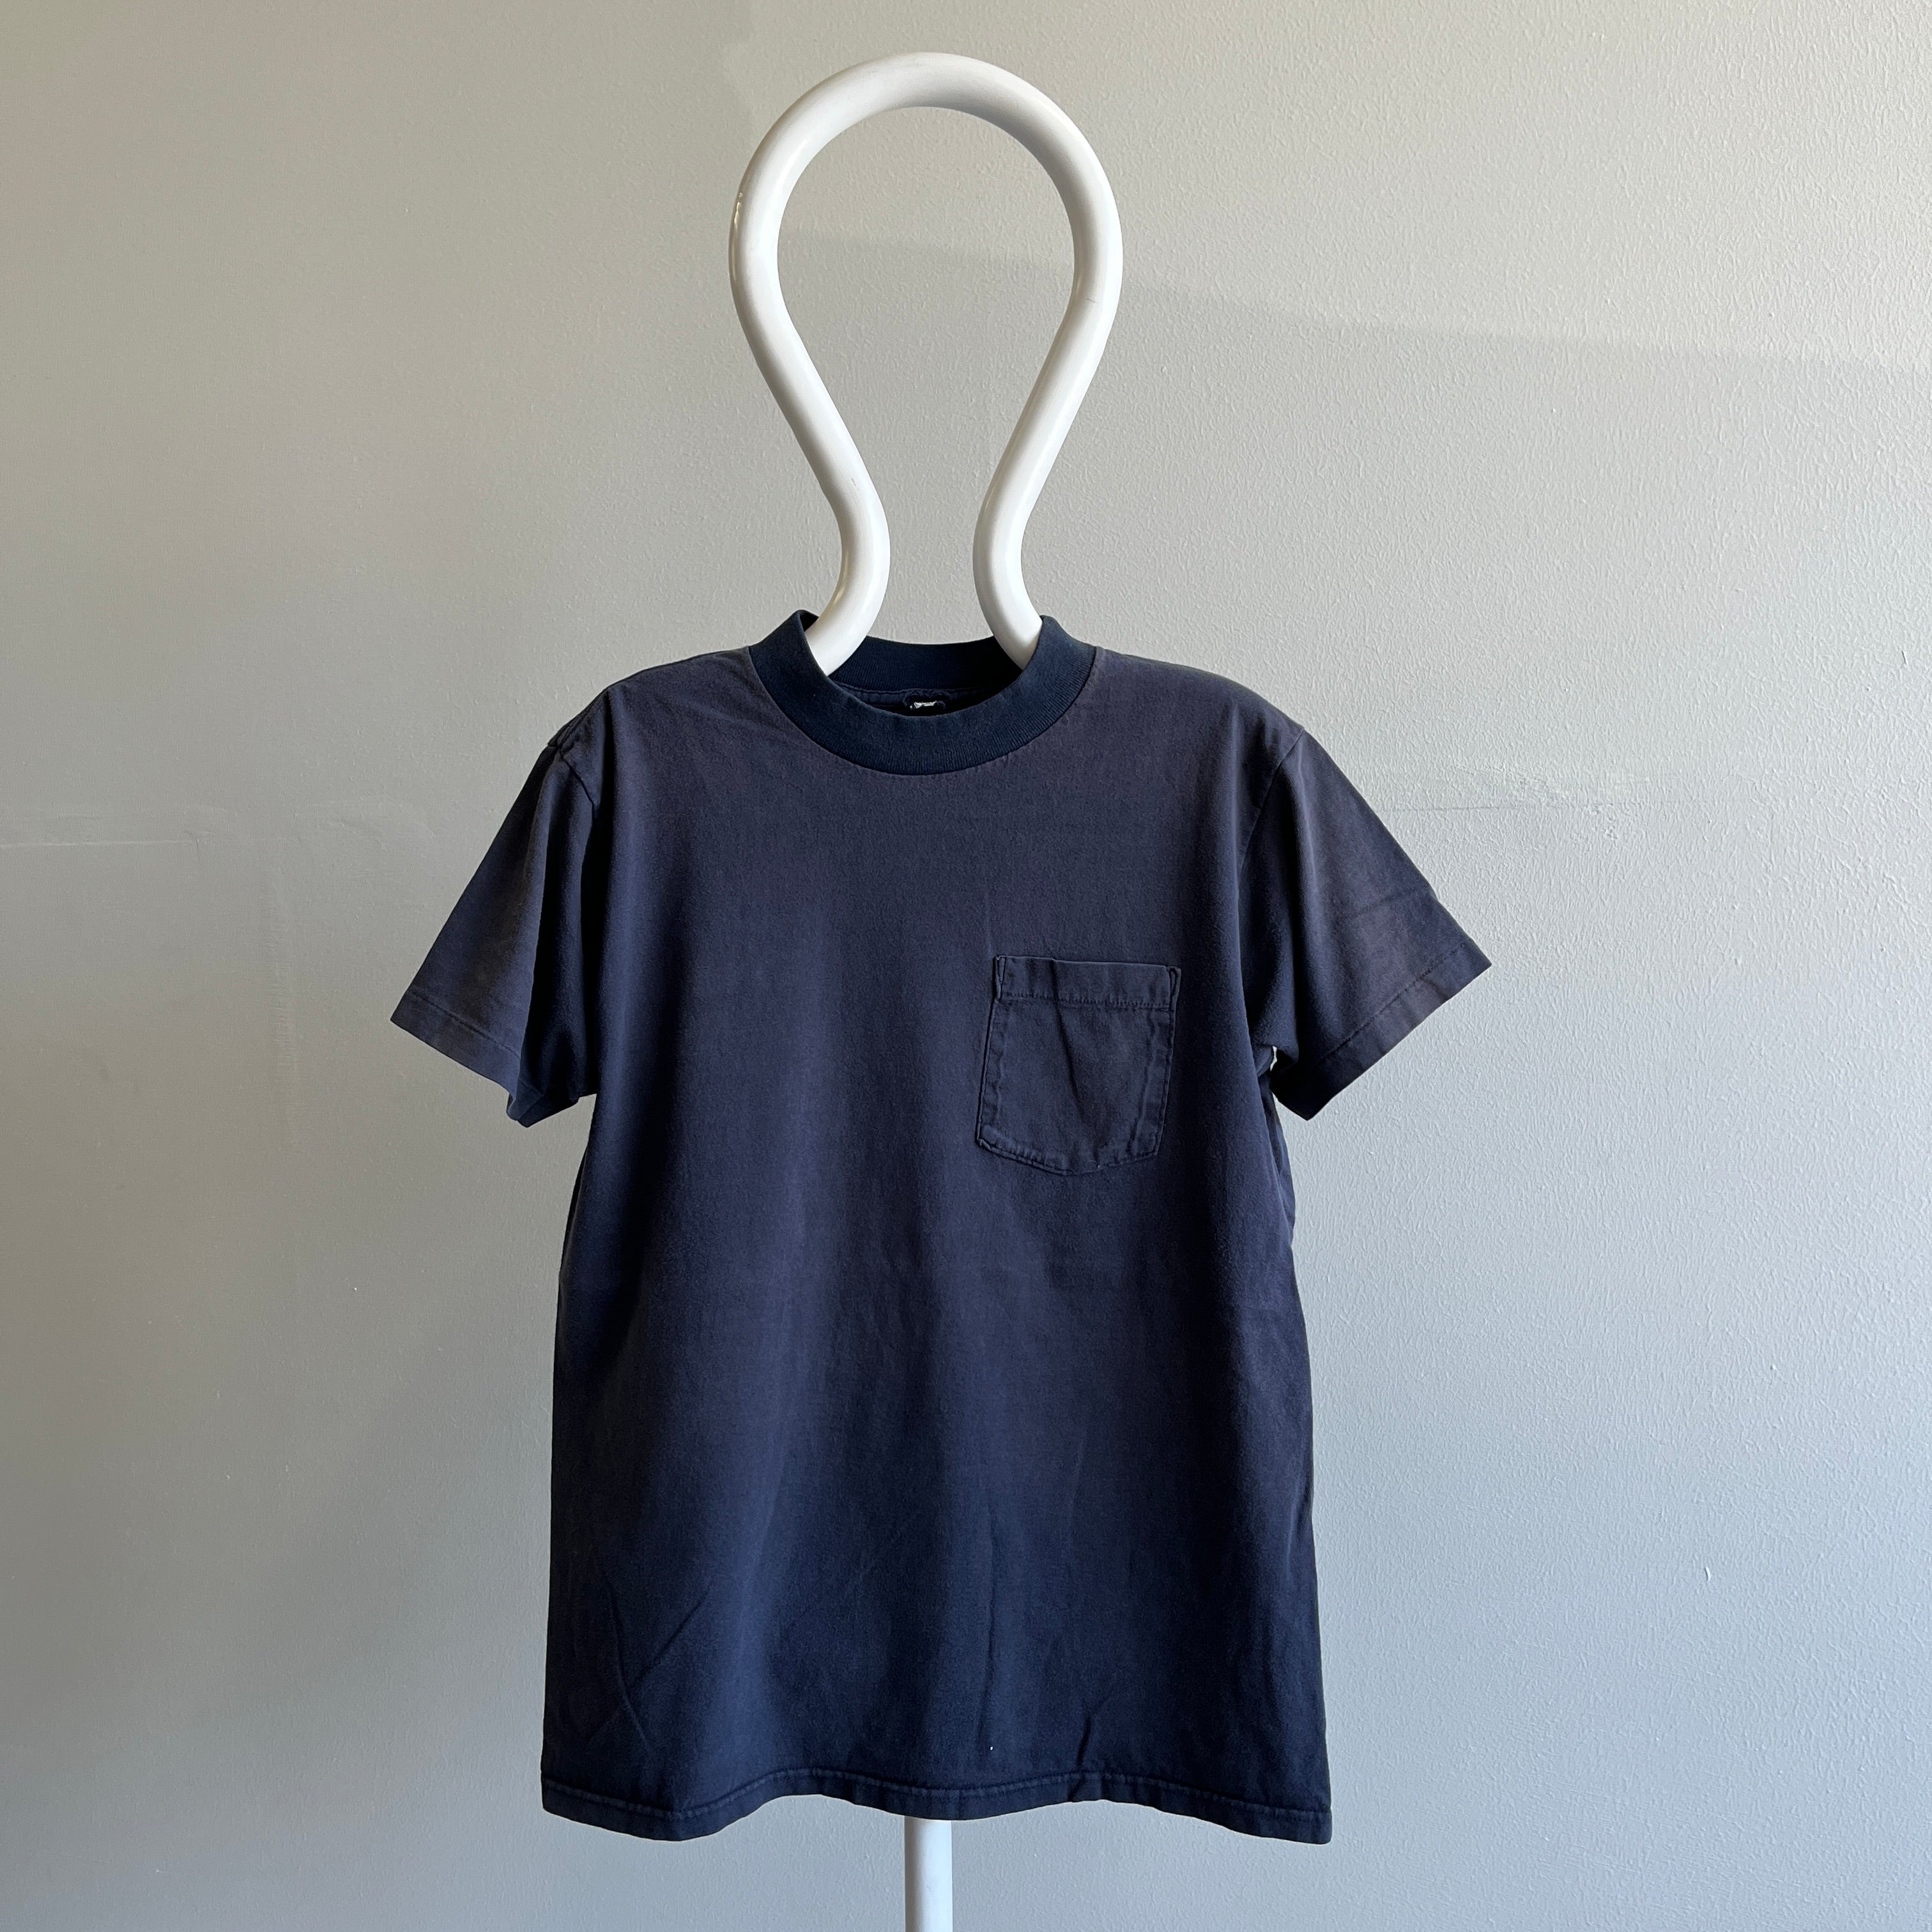 T-shirt à poche bleu marine délavé des années 1980 avec un col plus foncé - Tout est dans les détails !